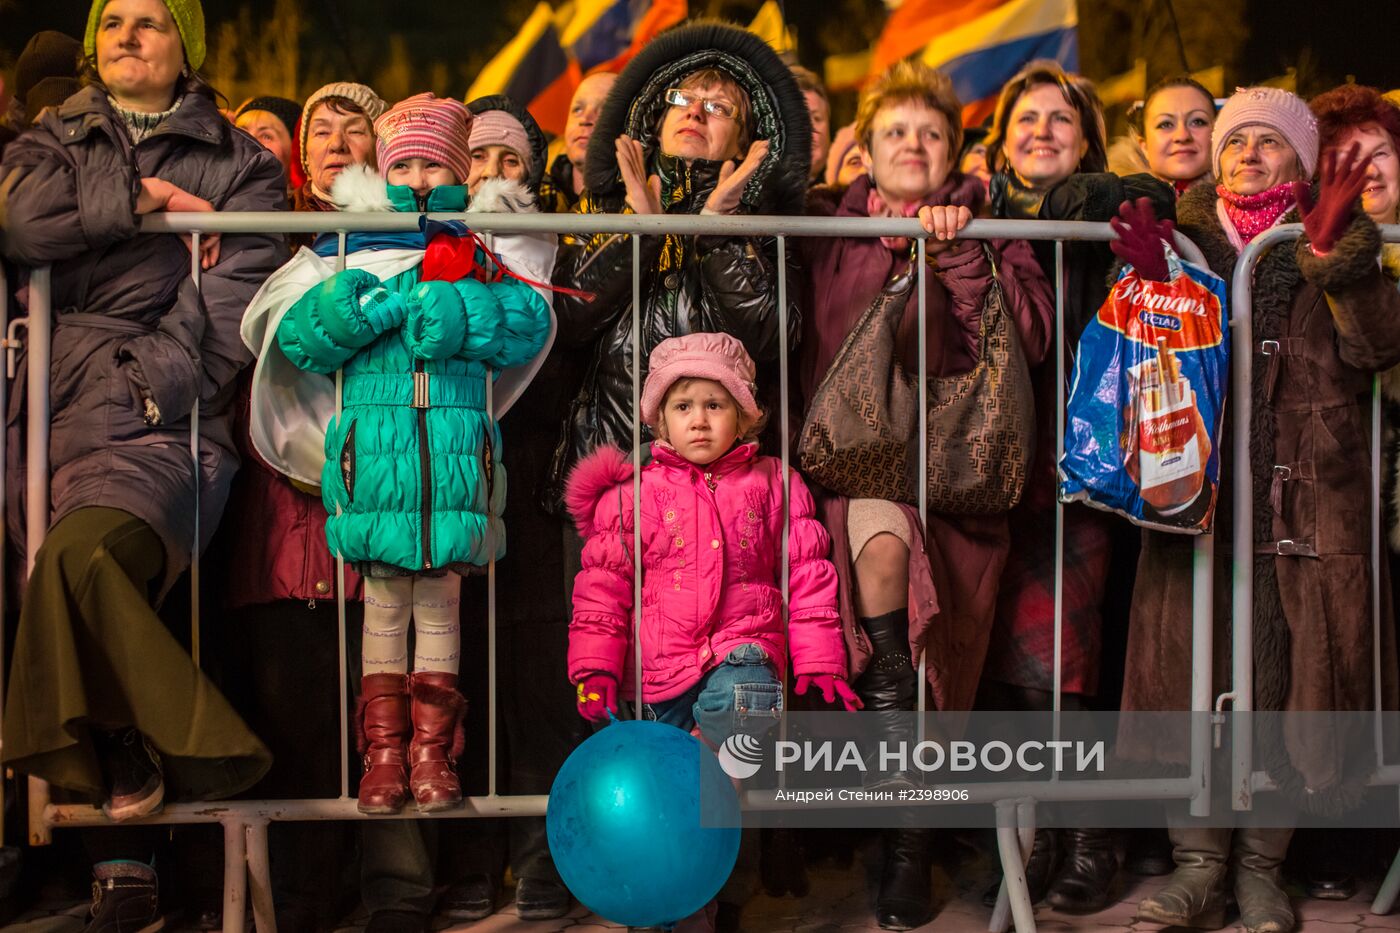 В центре Симферополя проходит праздничный концерт в честь референдума